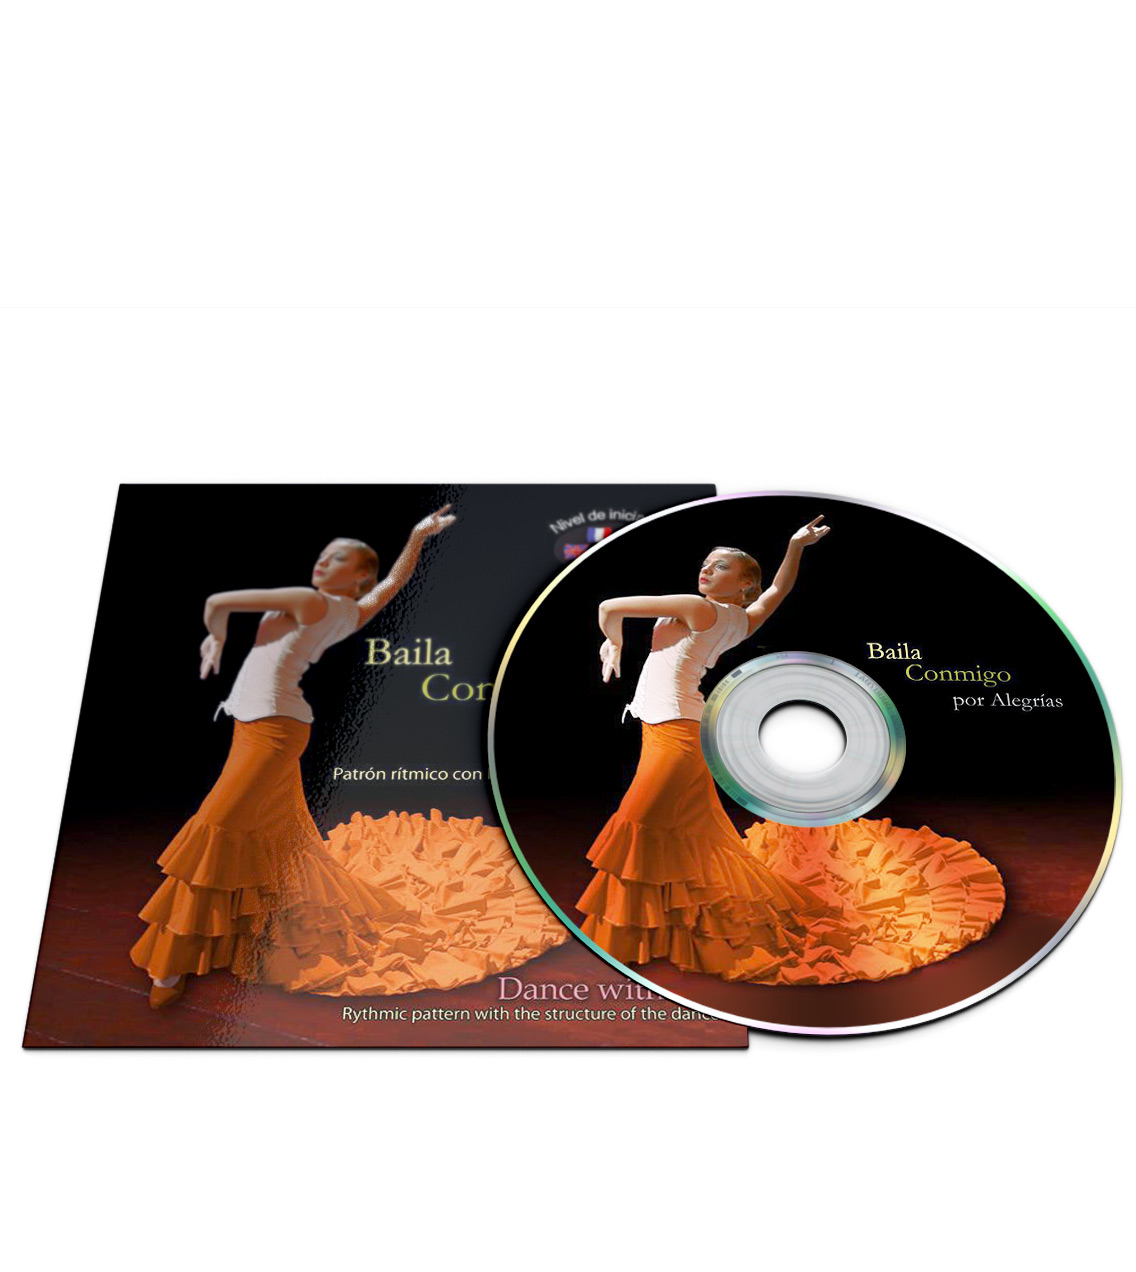 Flamencodans CD voor Alegrías